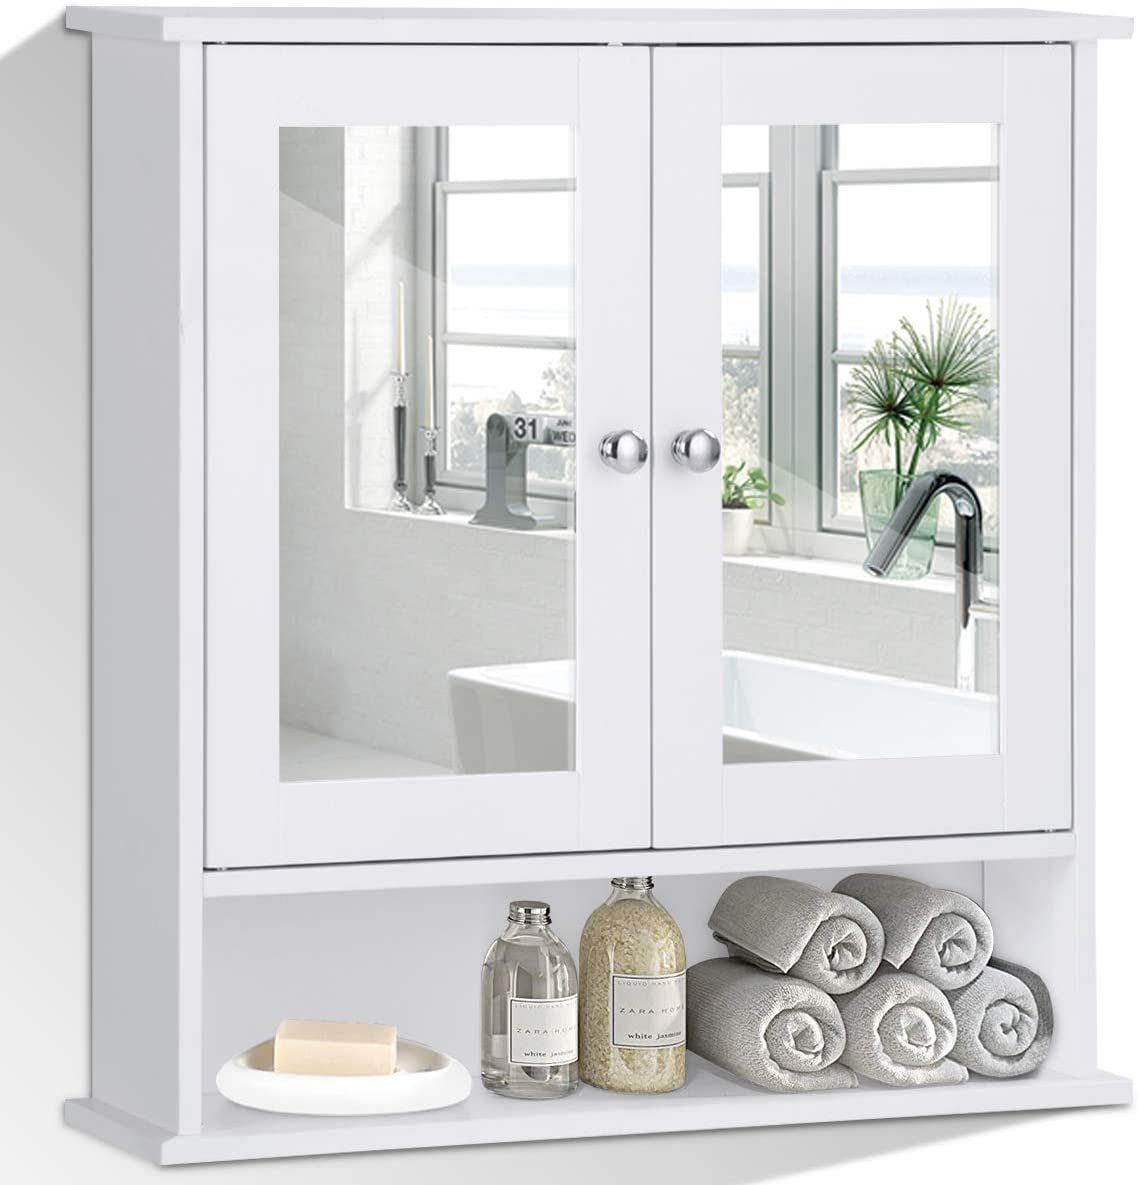 COSTWAY Spiegelschrank Badzimmerschrank mit höhenverstellbarer Ablage weiß | Spiegelschränke